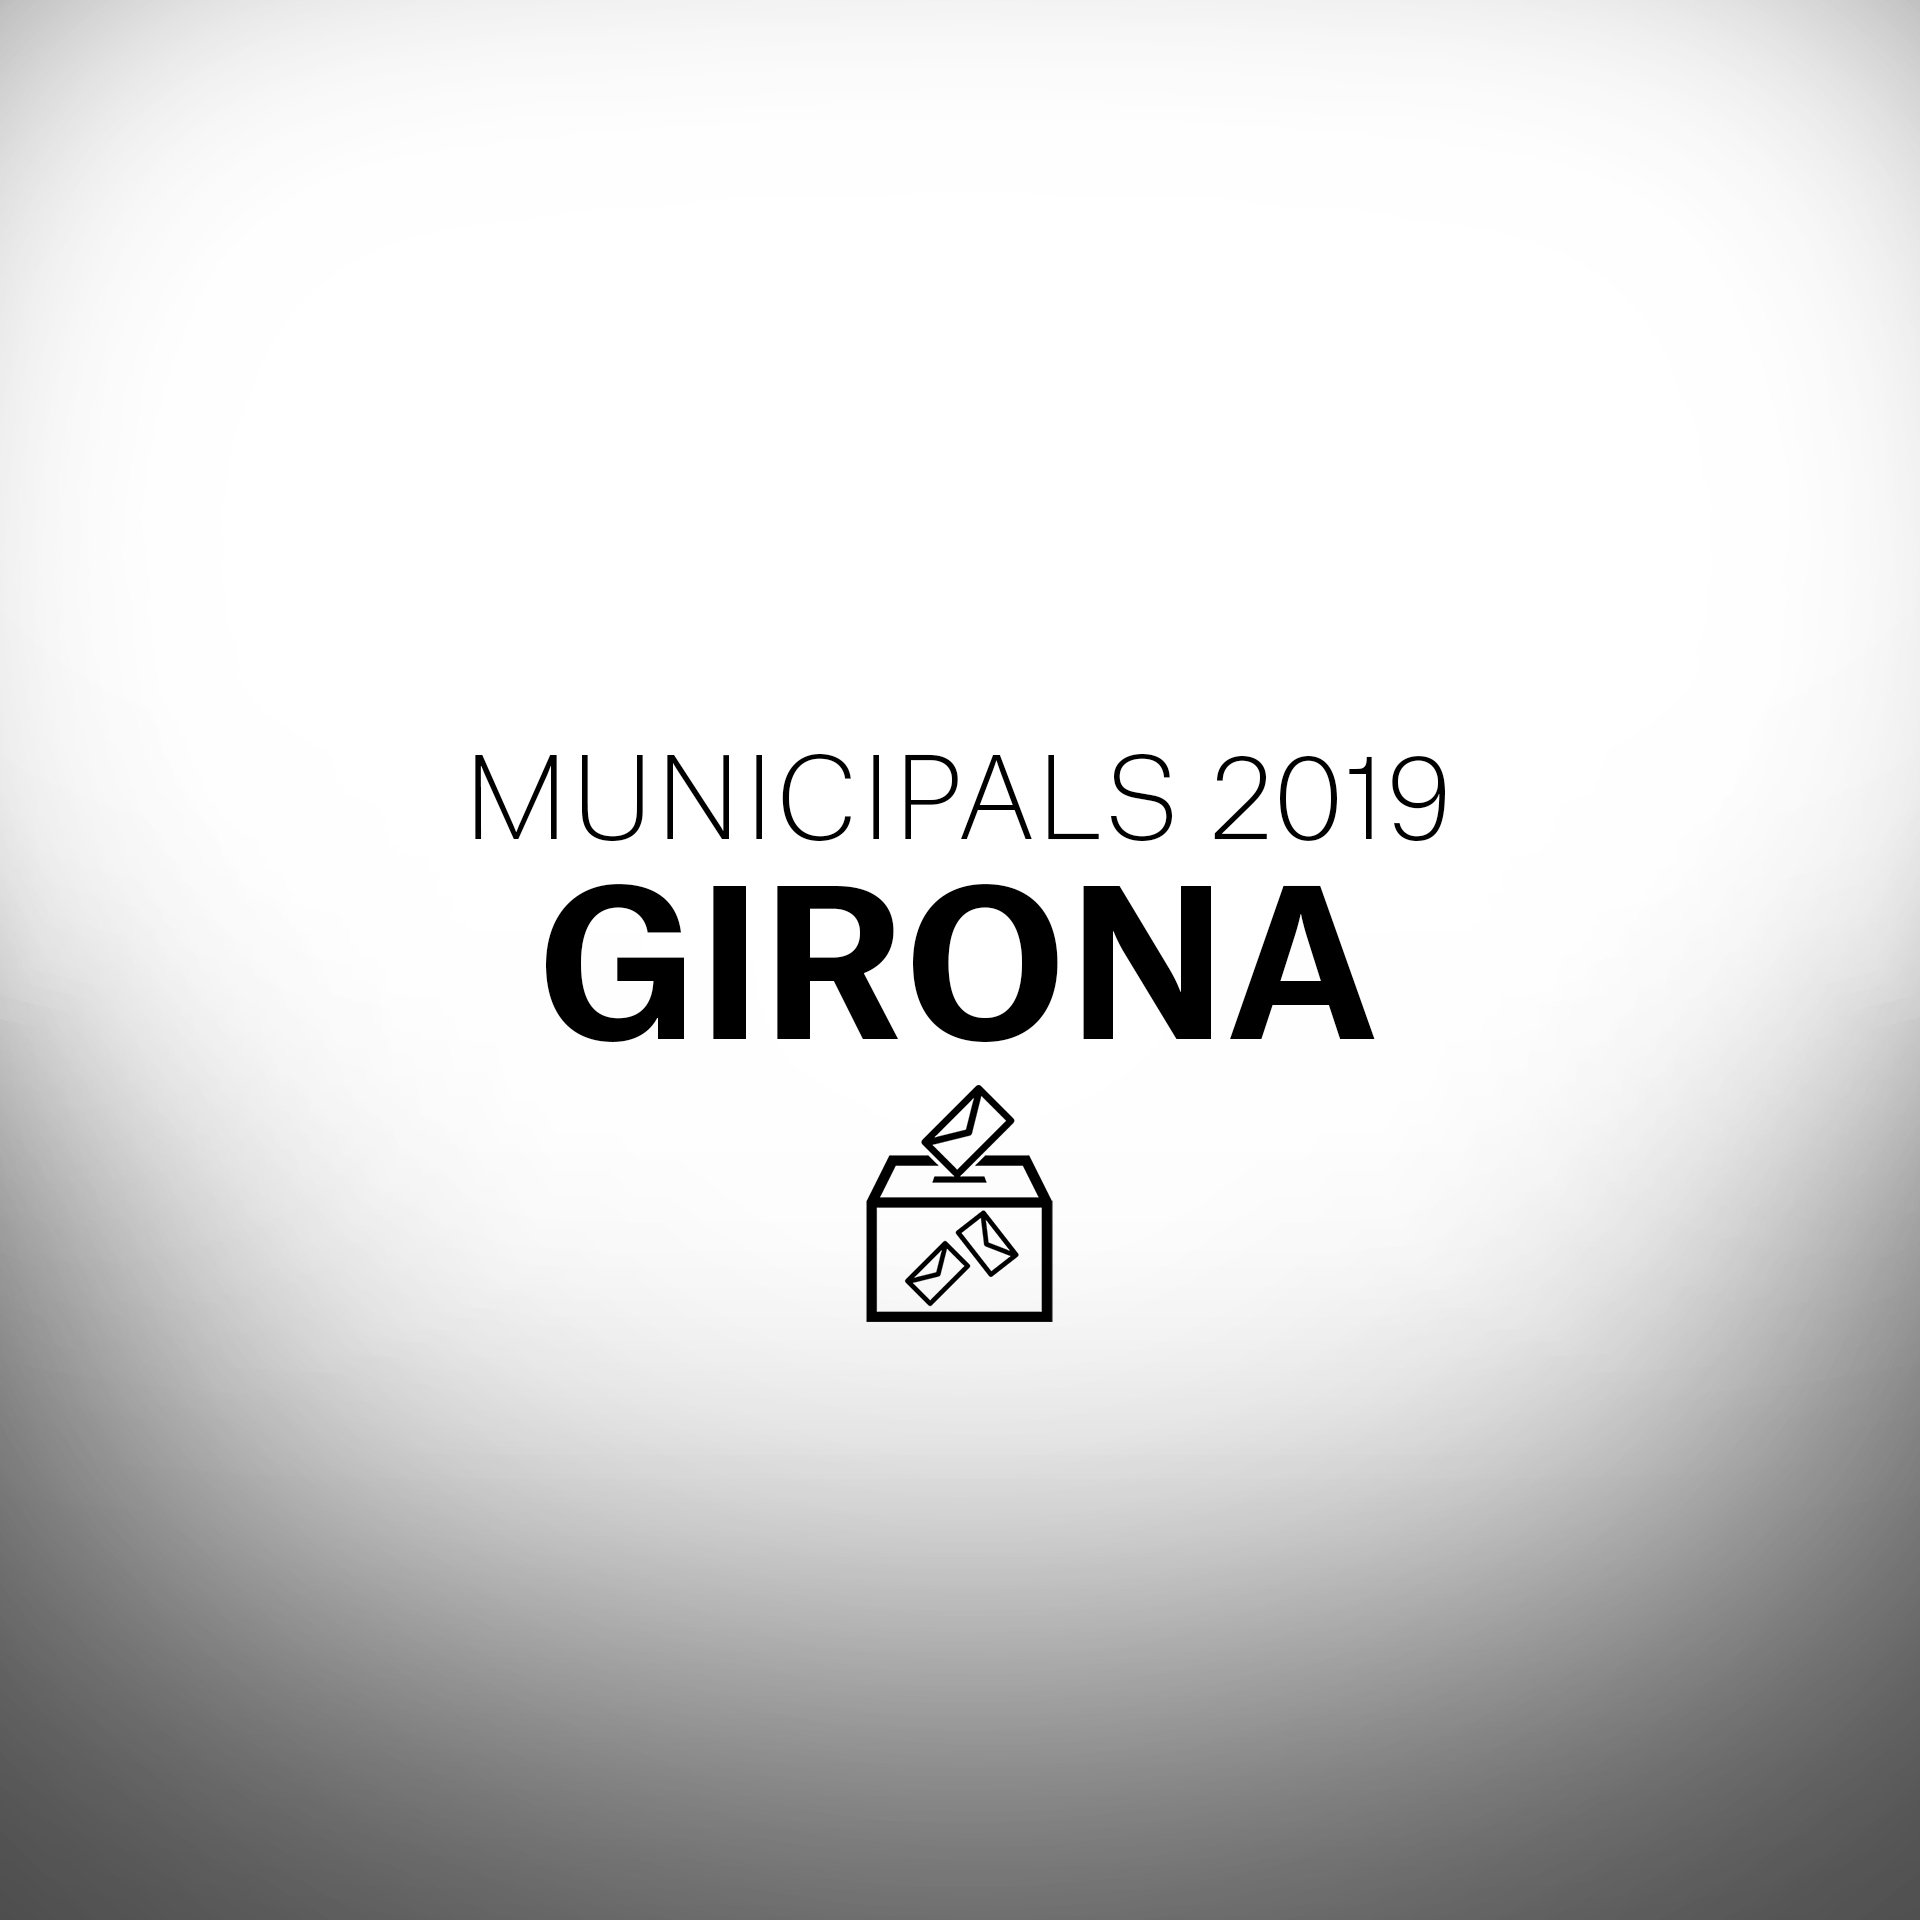 Què passarà a les eleccions municipals a Girona?